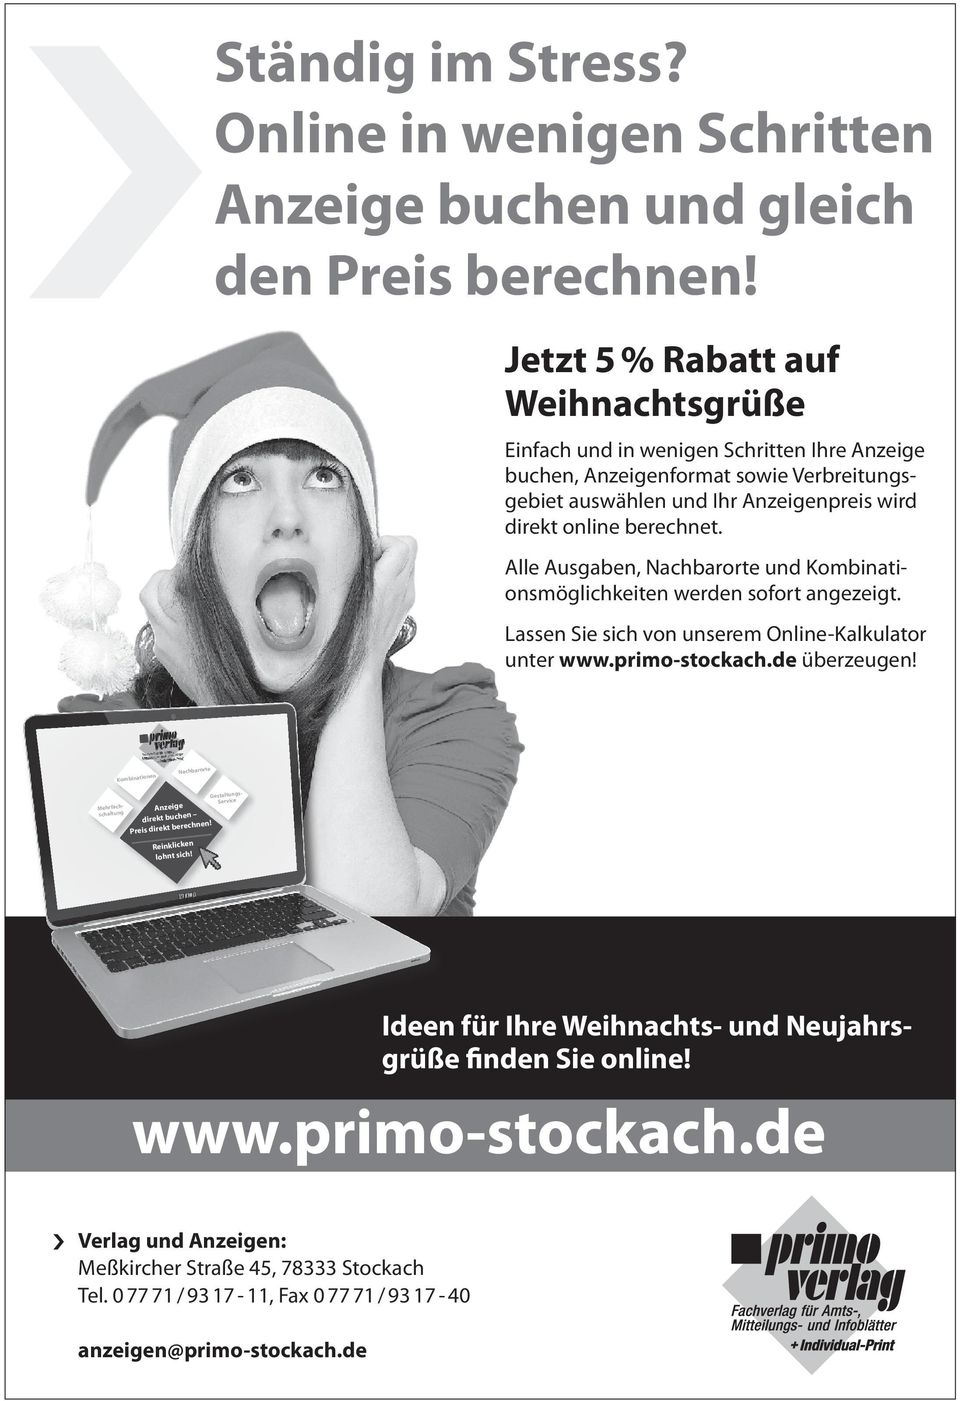 Alle Ausgaben, Nachbarorte und Kombinationsmöglichkeiten werden sofort angezeigt. Lassen Sie sich von unserem Online-Kalkulator unter www.primo-stockach.de überzeugen!